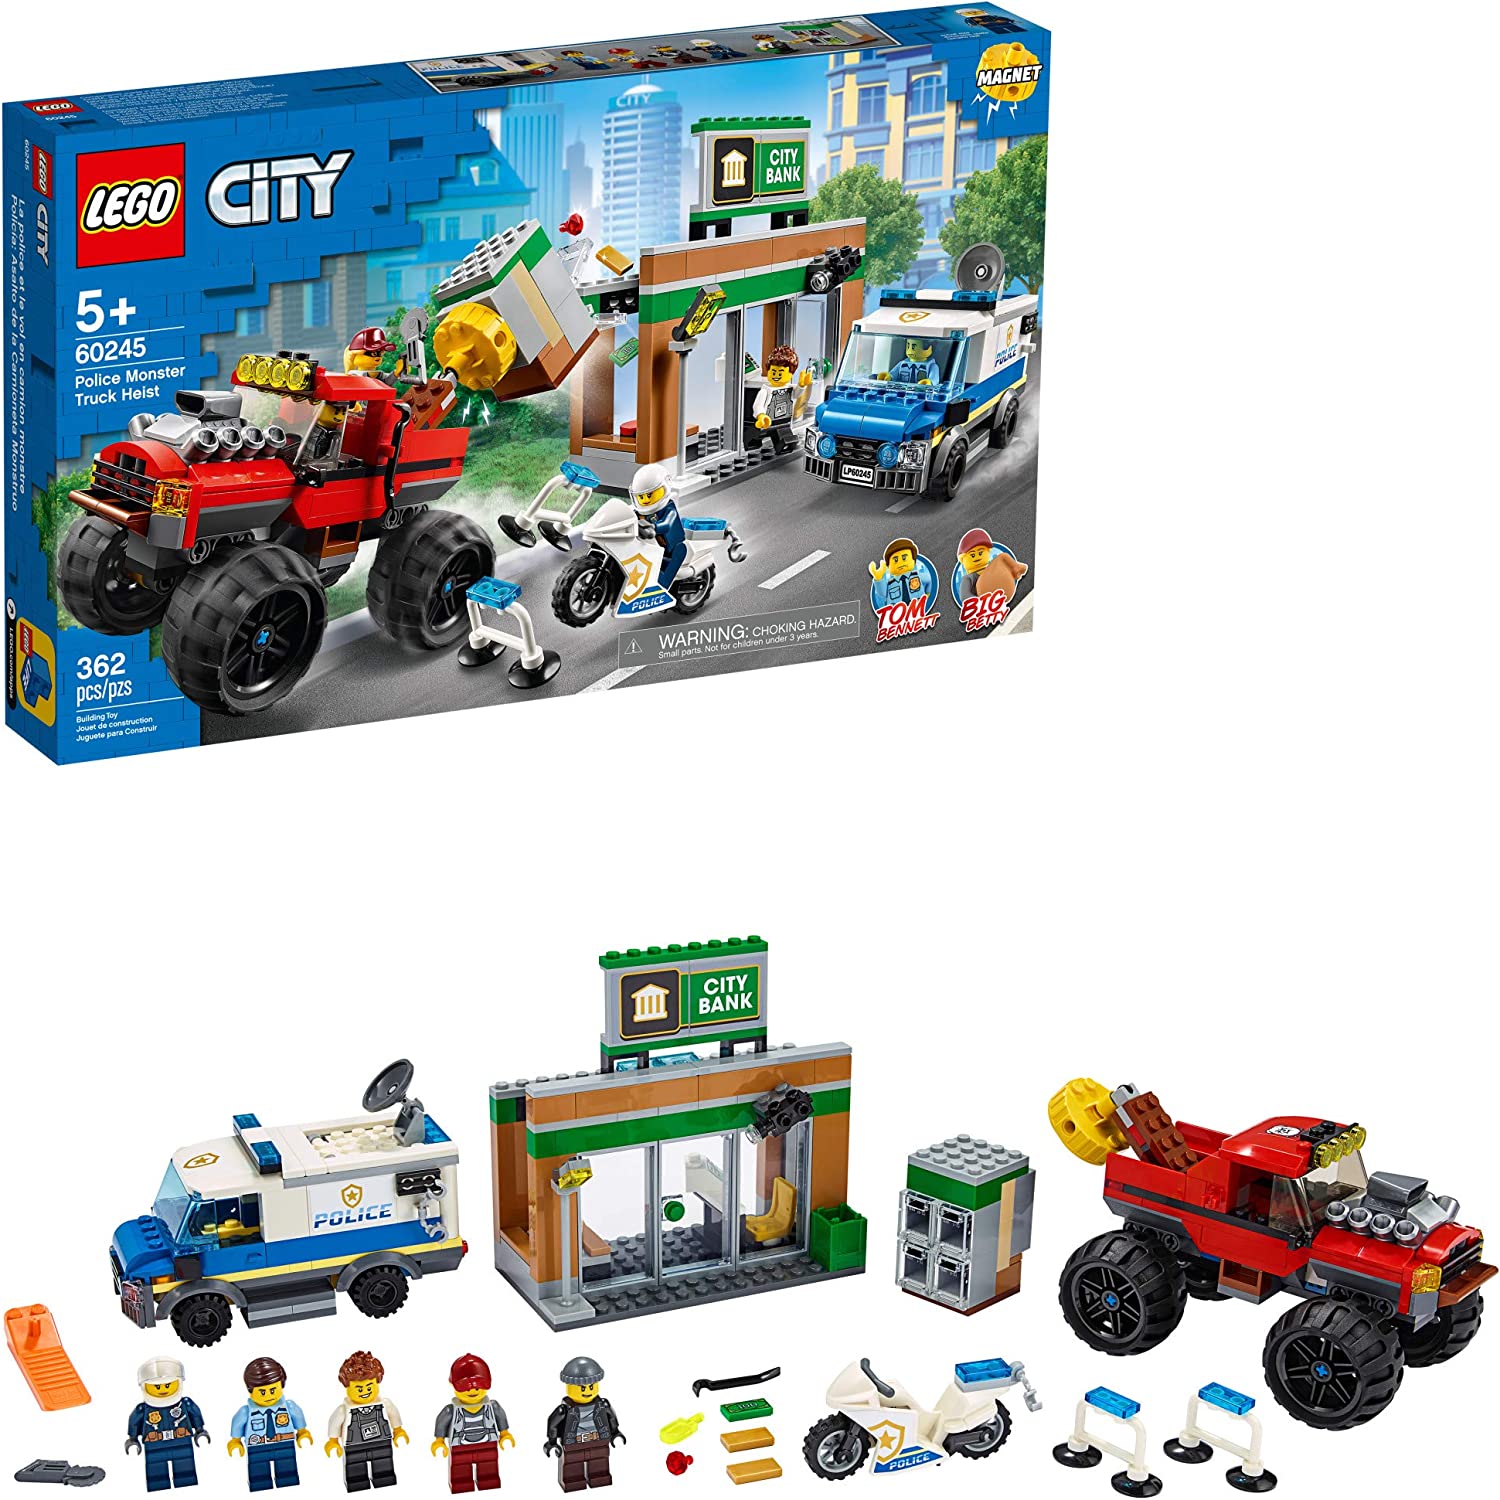 LEGO City Police Monster Truck Heist Set (60245) [RETIRED]